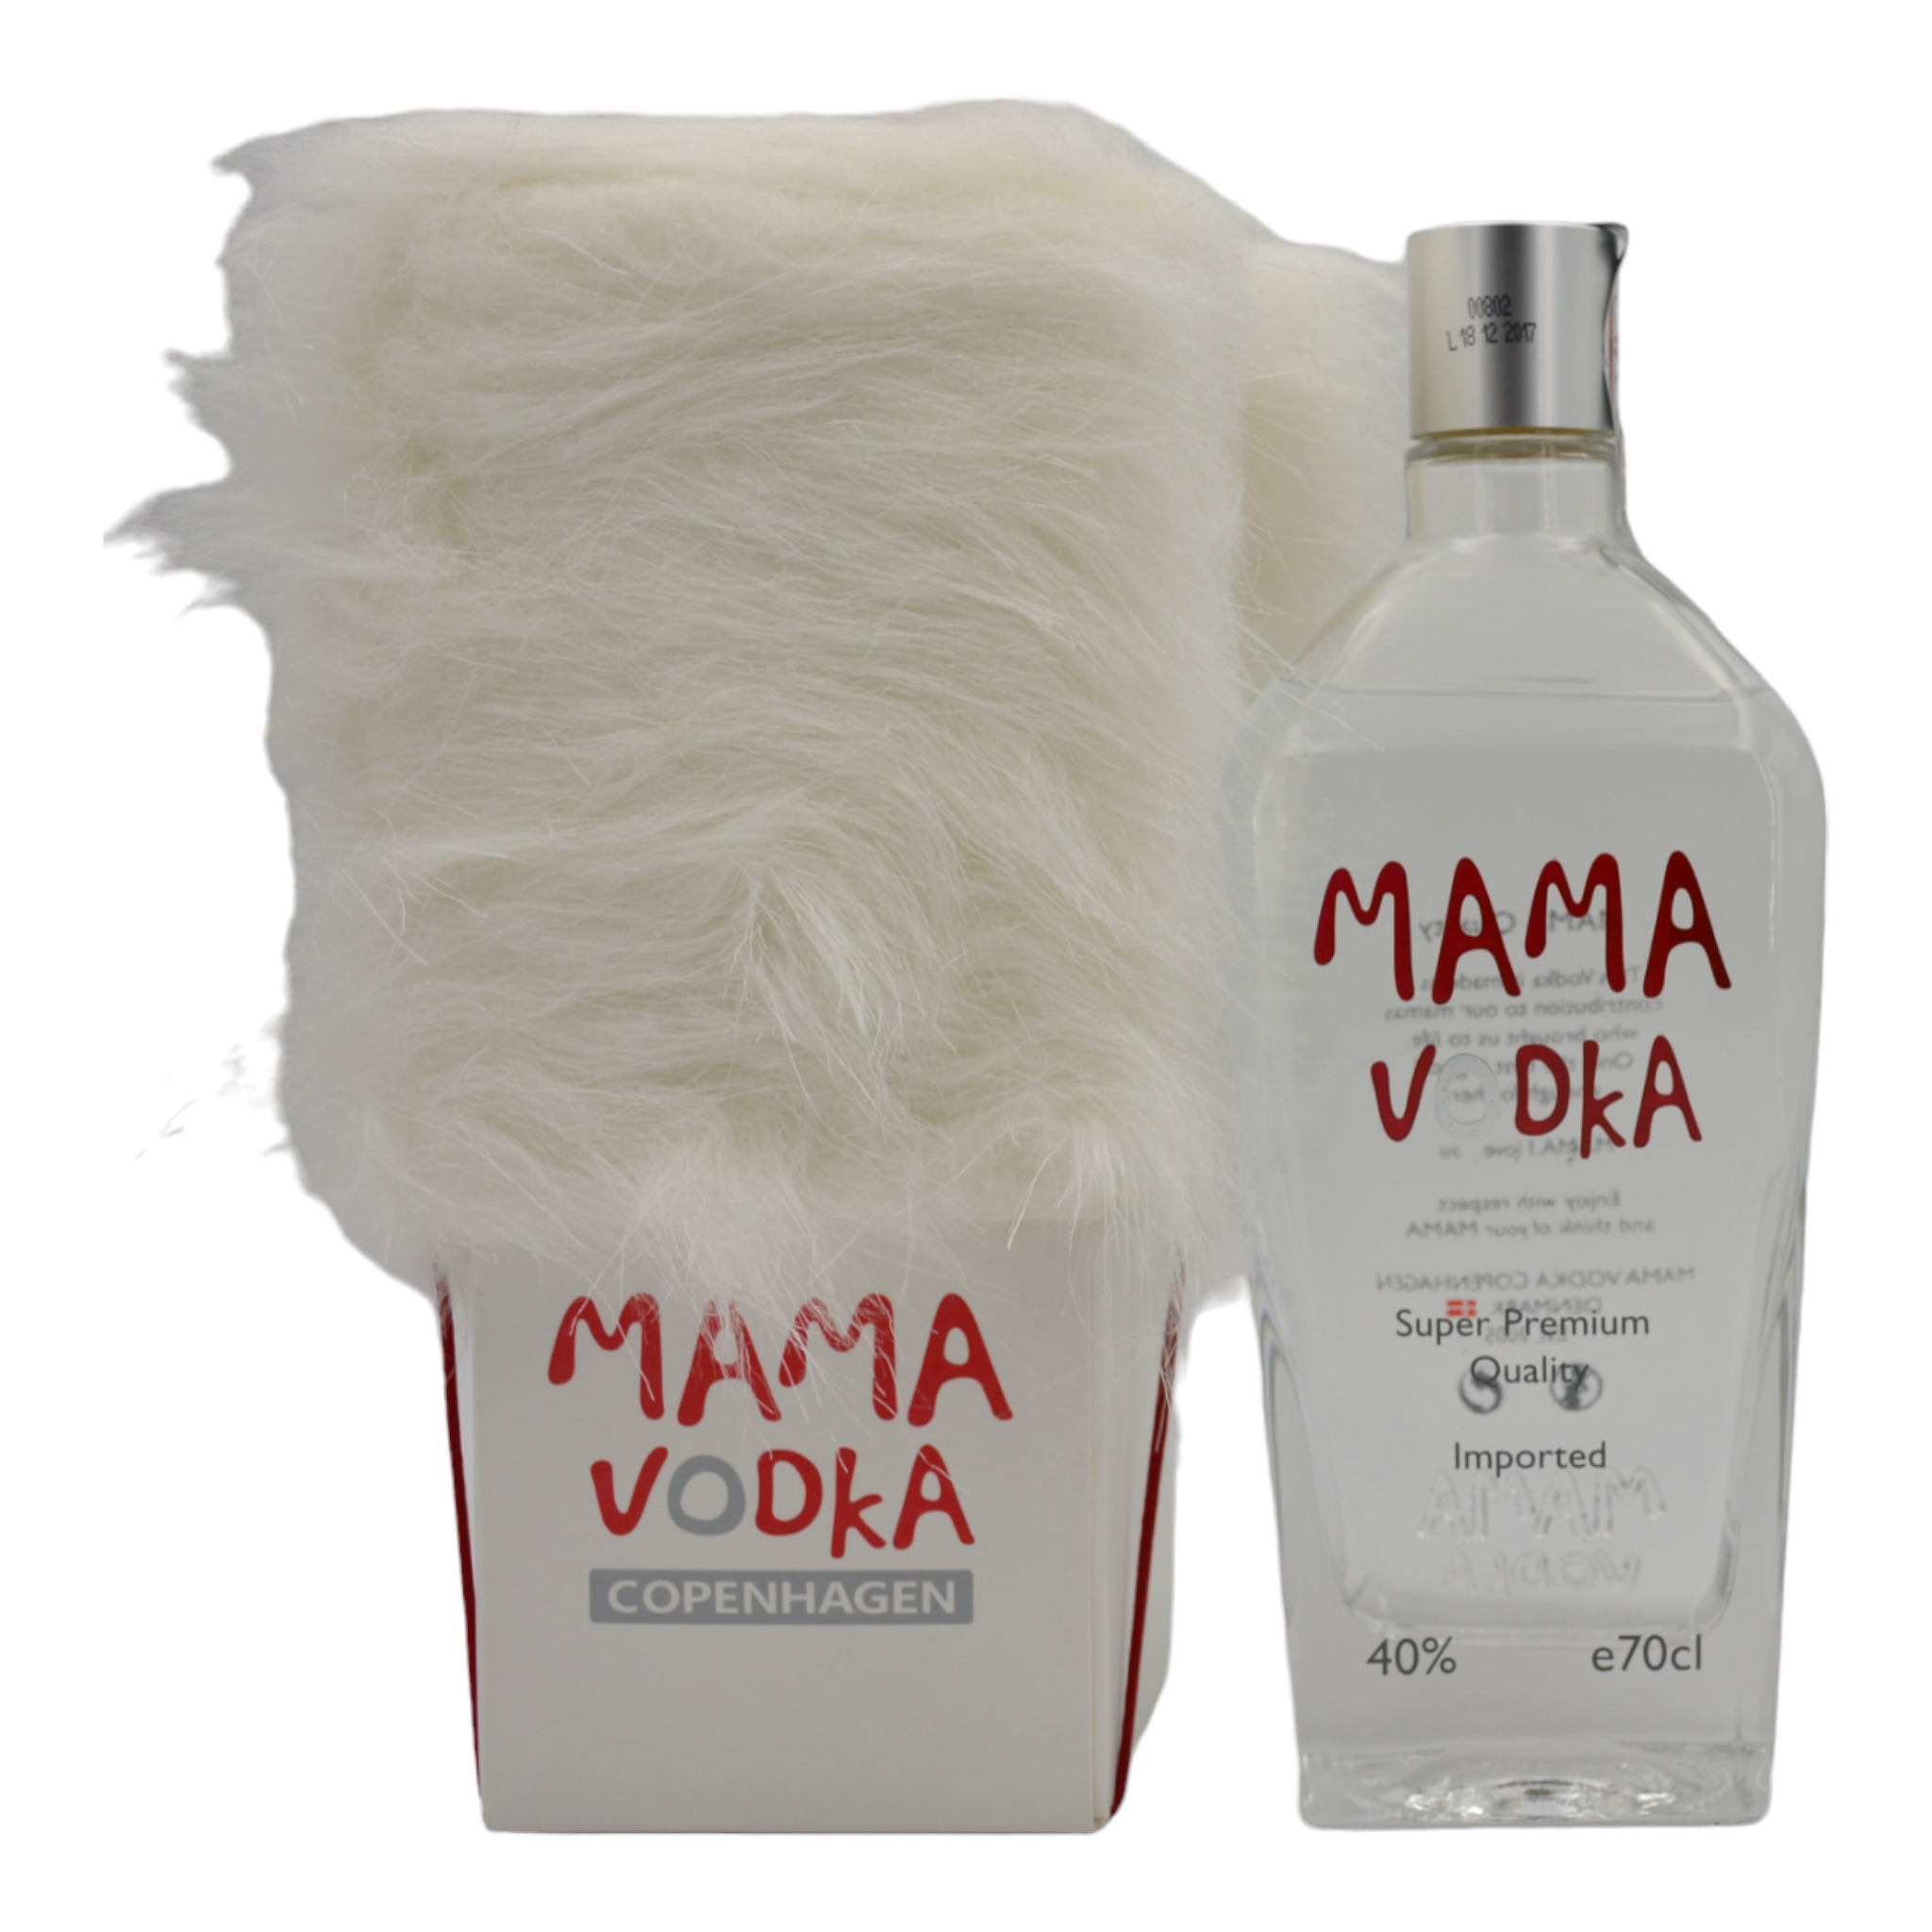 5704734000163Mama Vodka Super Premium Quality f - Weinhaus-Buecker